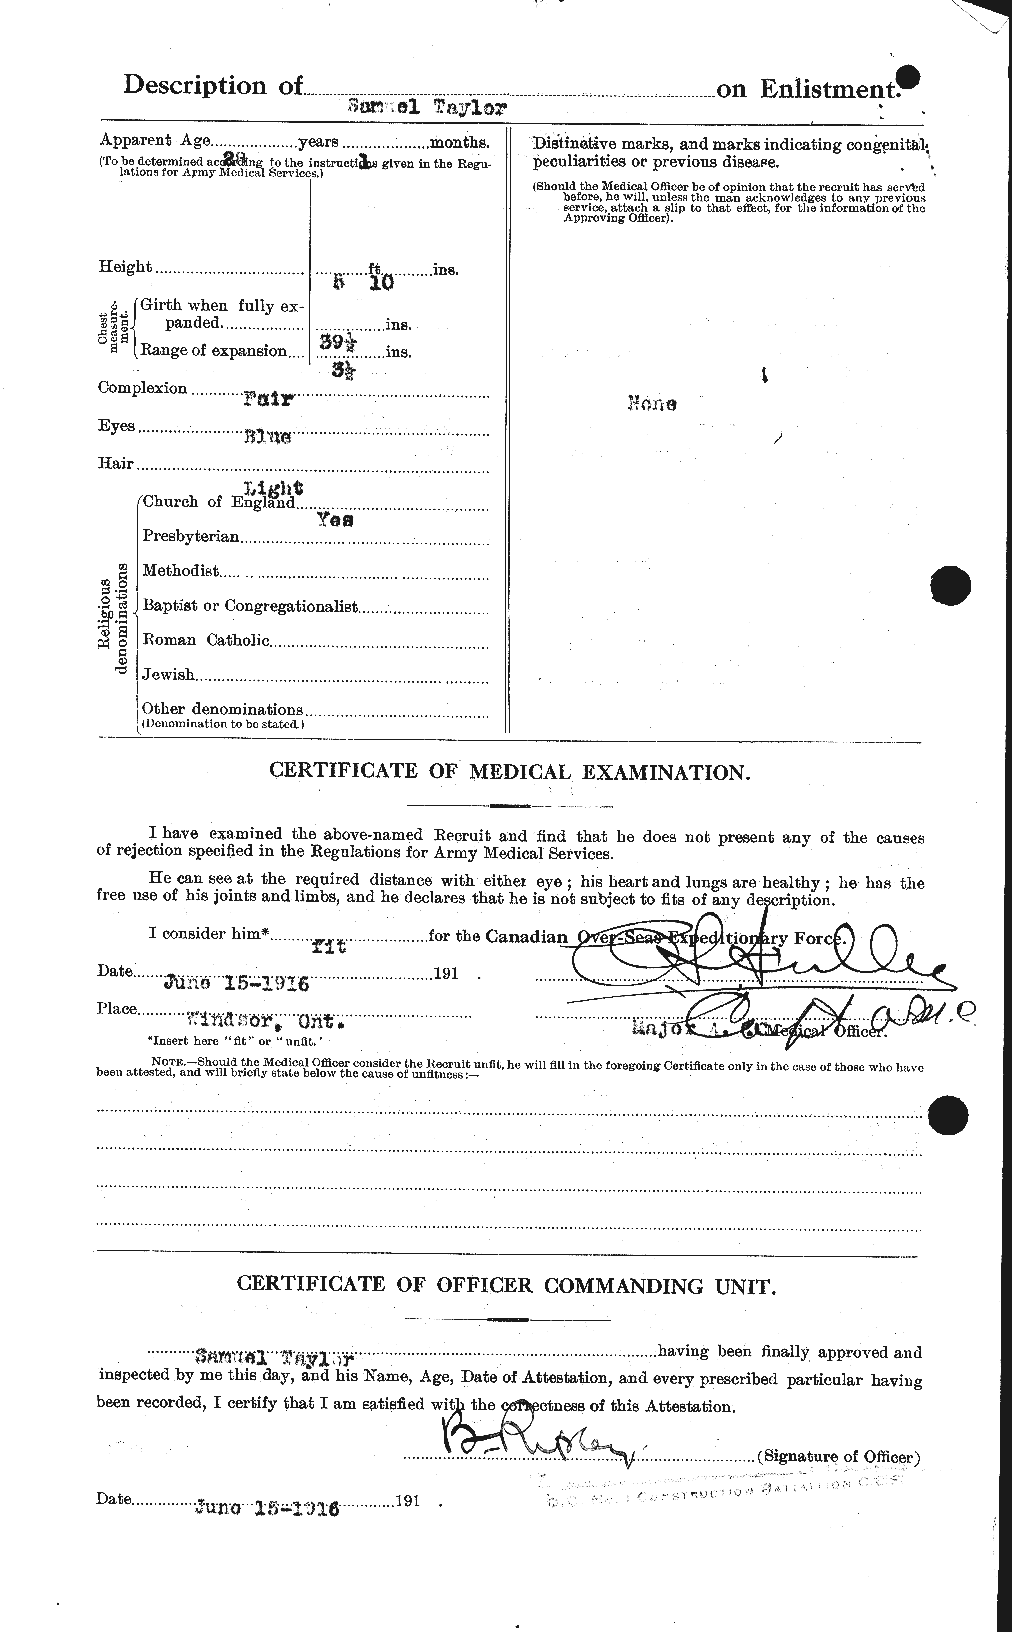 Dossiers du Personnel de la Première Guerre mondiale - CEC 627550b